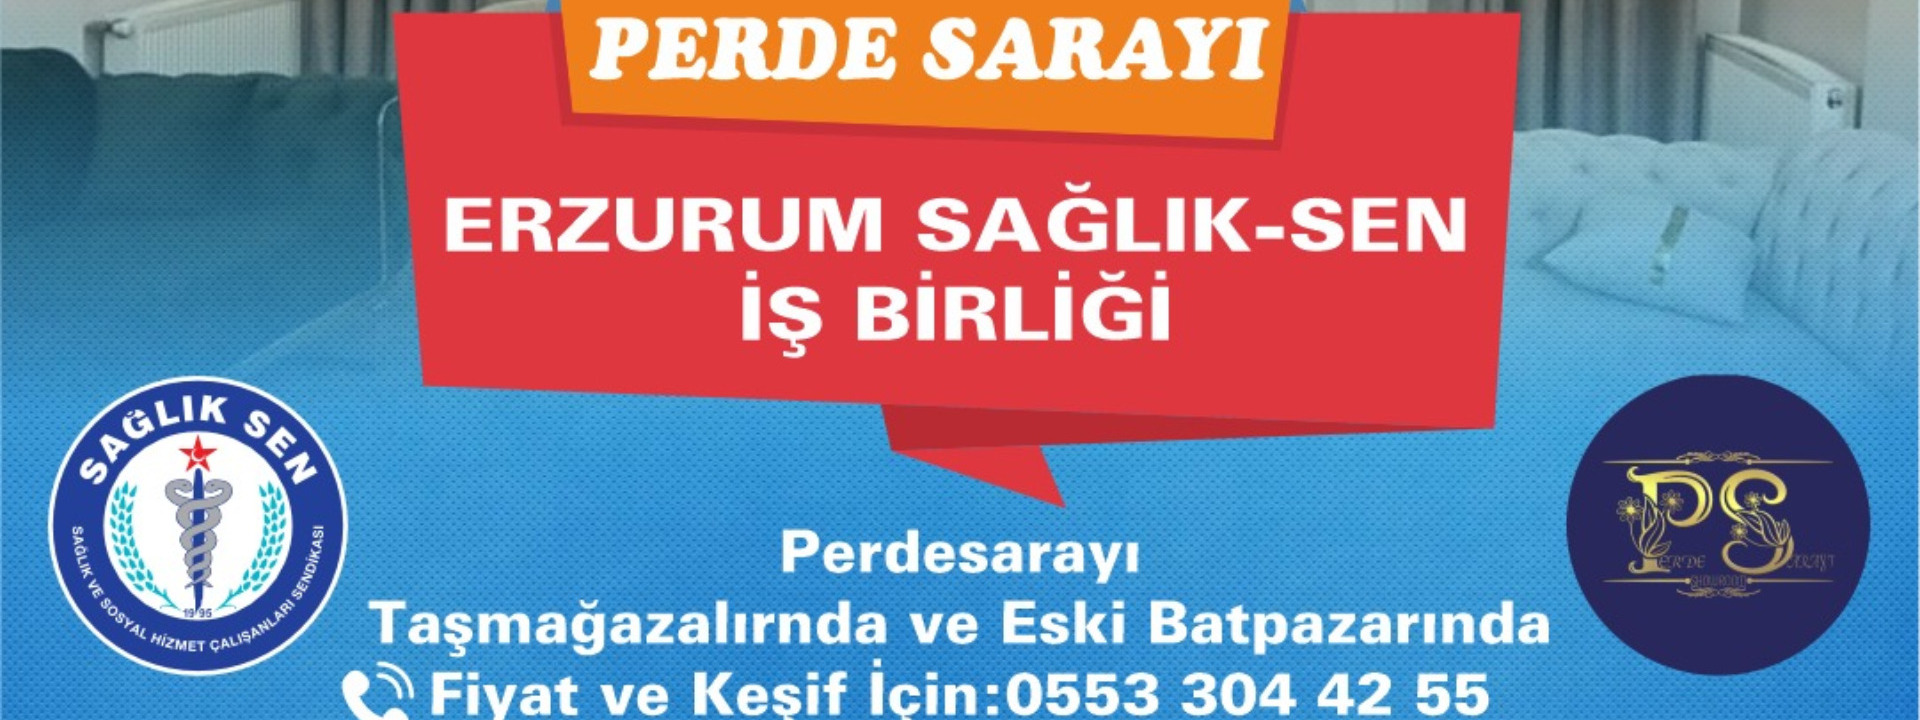 Perde Sarayı Erzurum Sağlık-Sen İşbirliği